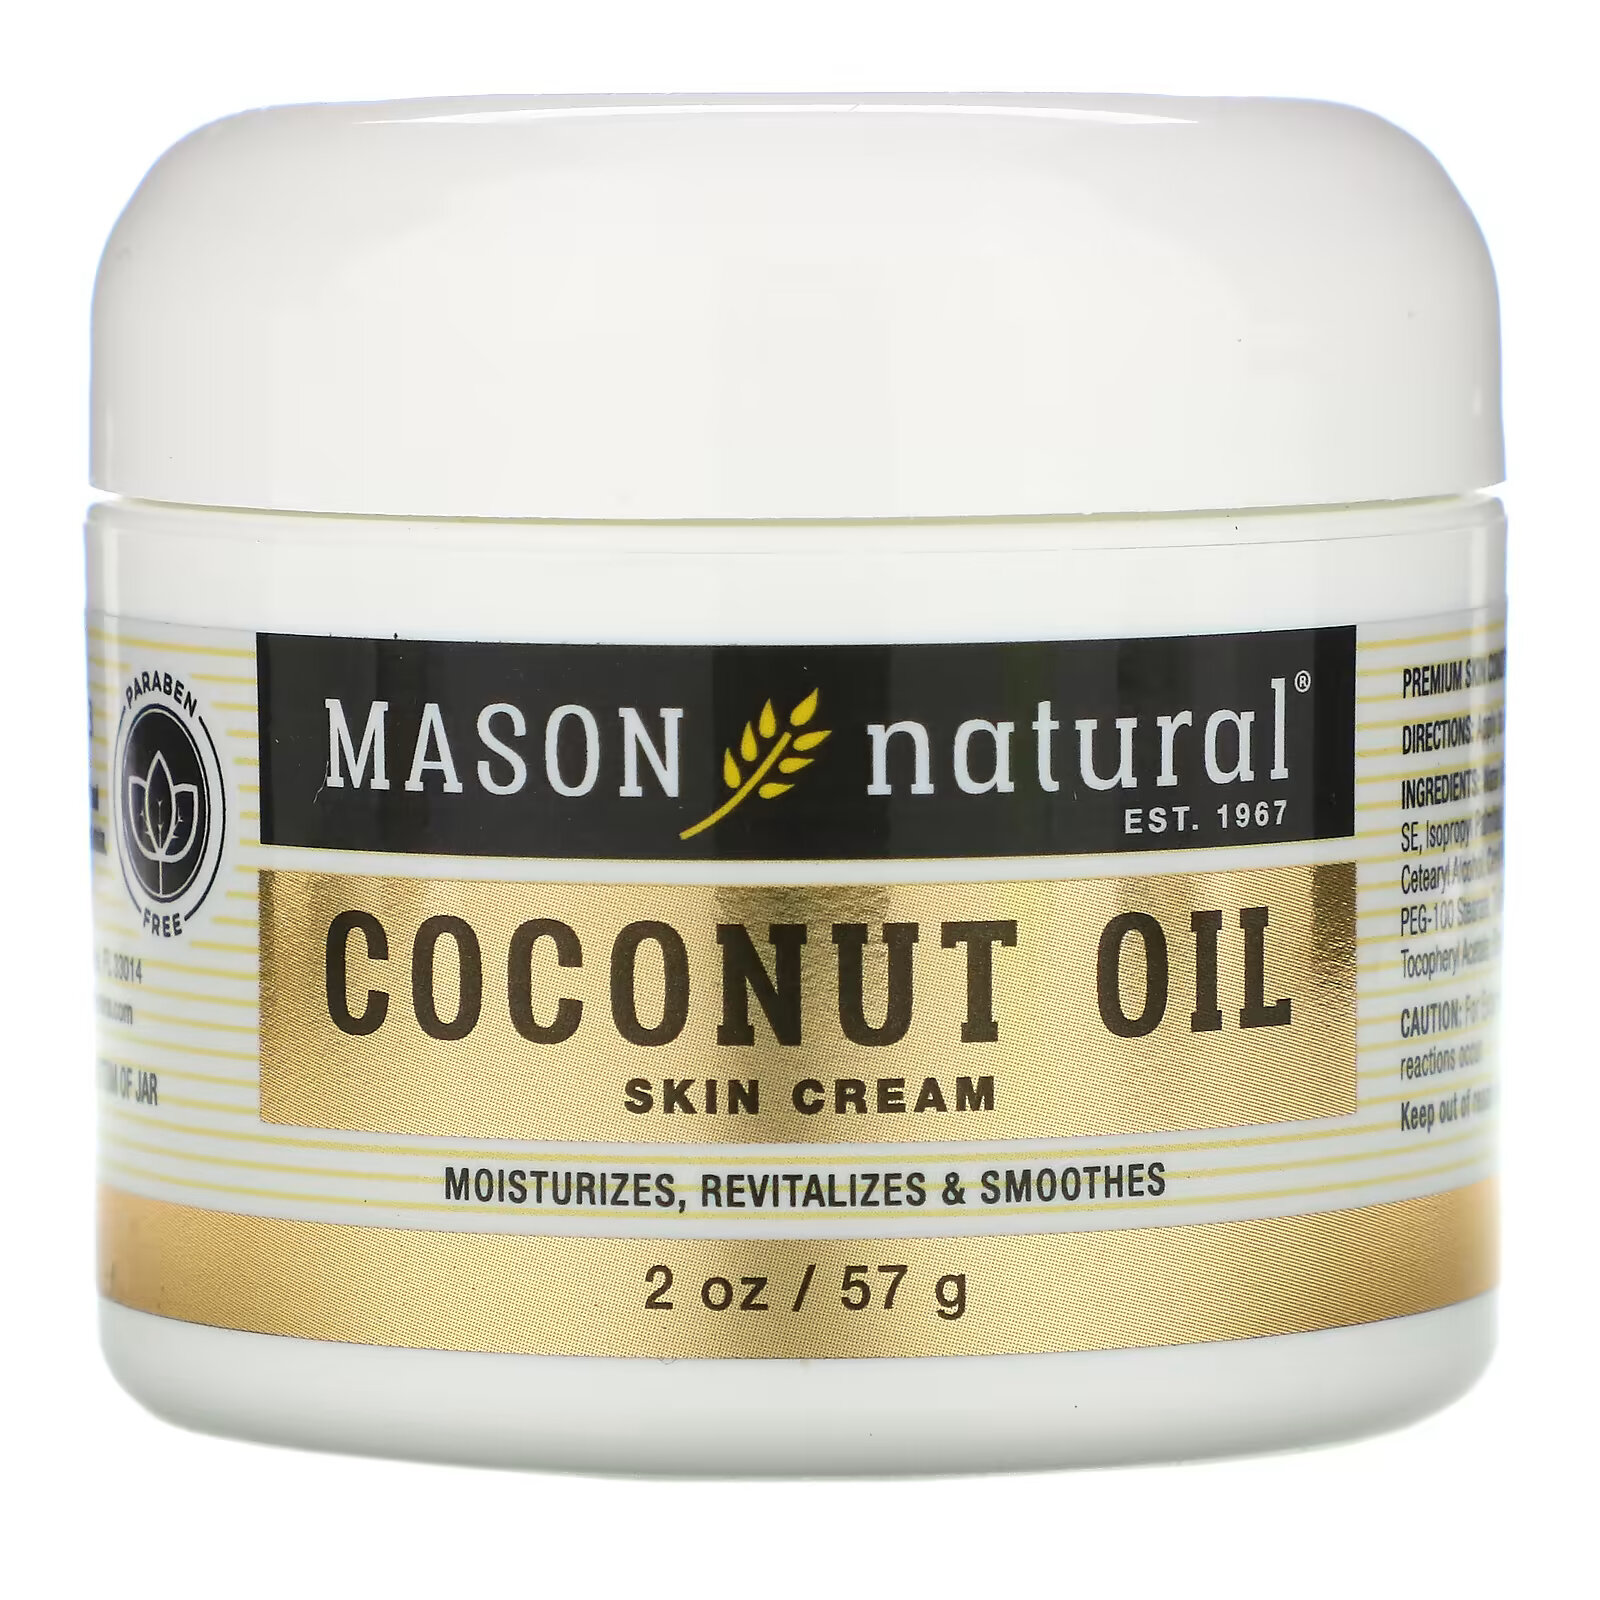 Крем Mason Natural для кожи с кокосовым маслом, 57 г крем mason natural с коллагеном премиального качества 57 г